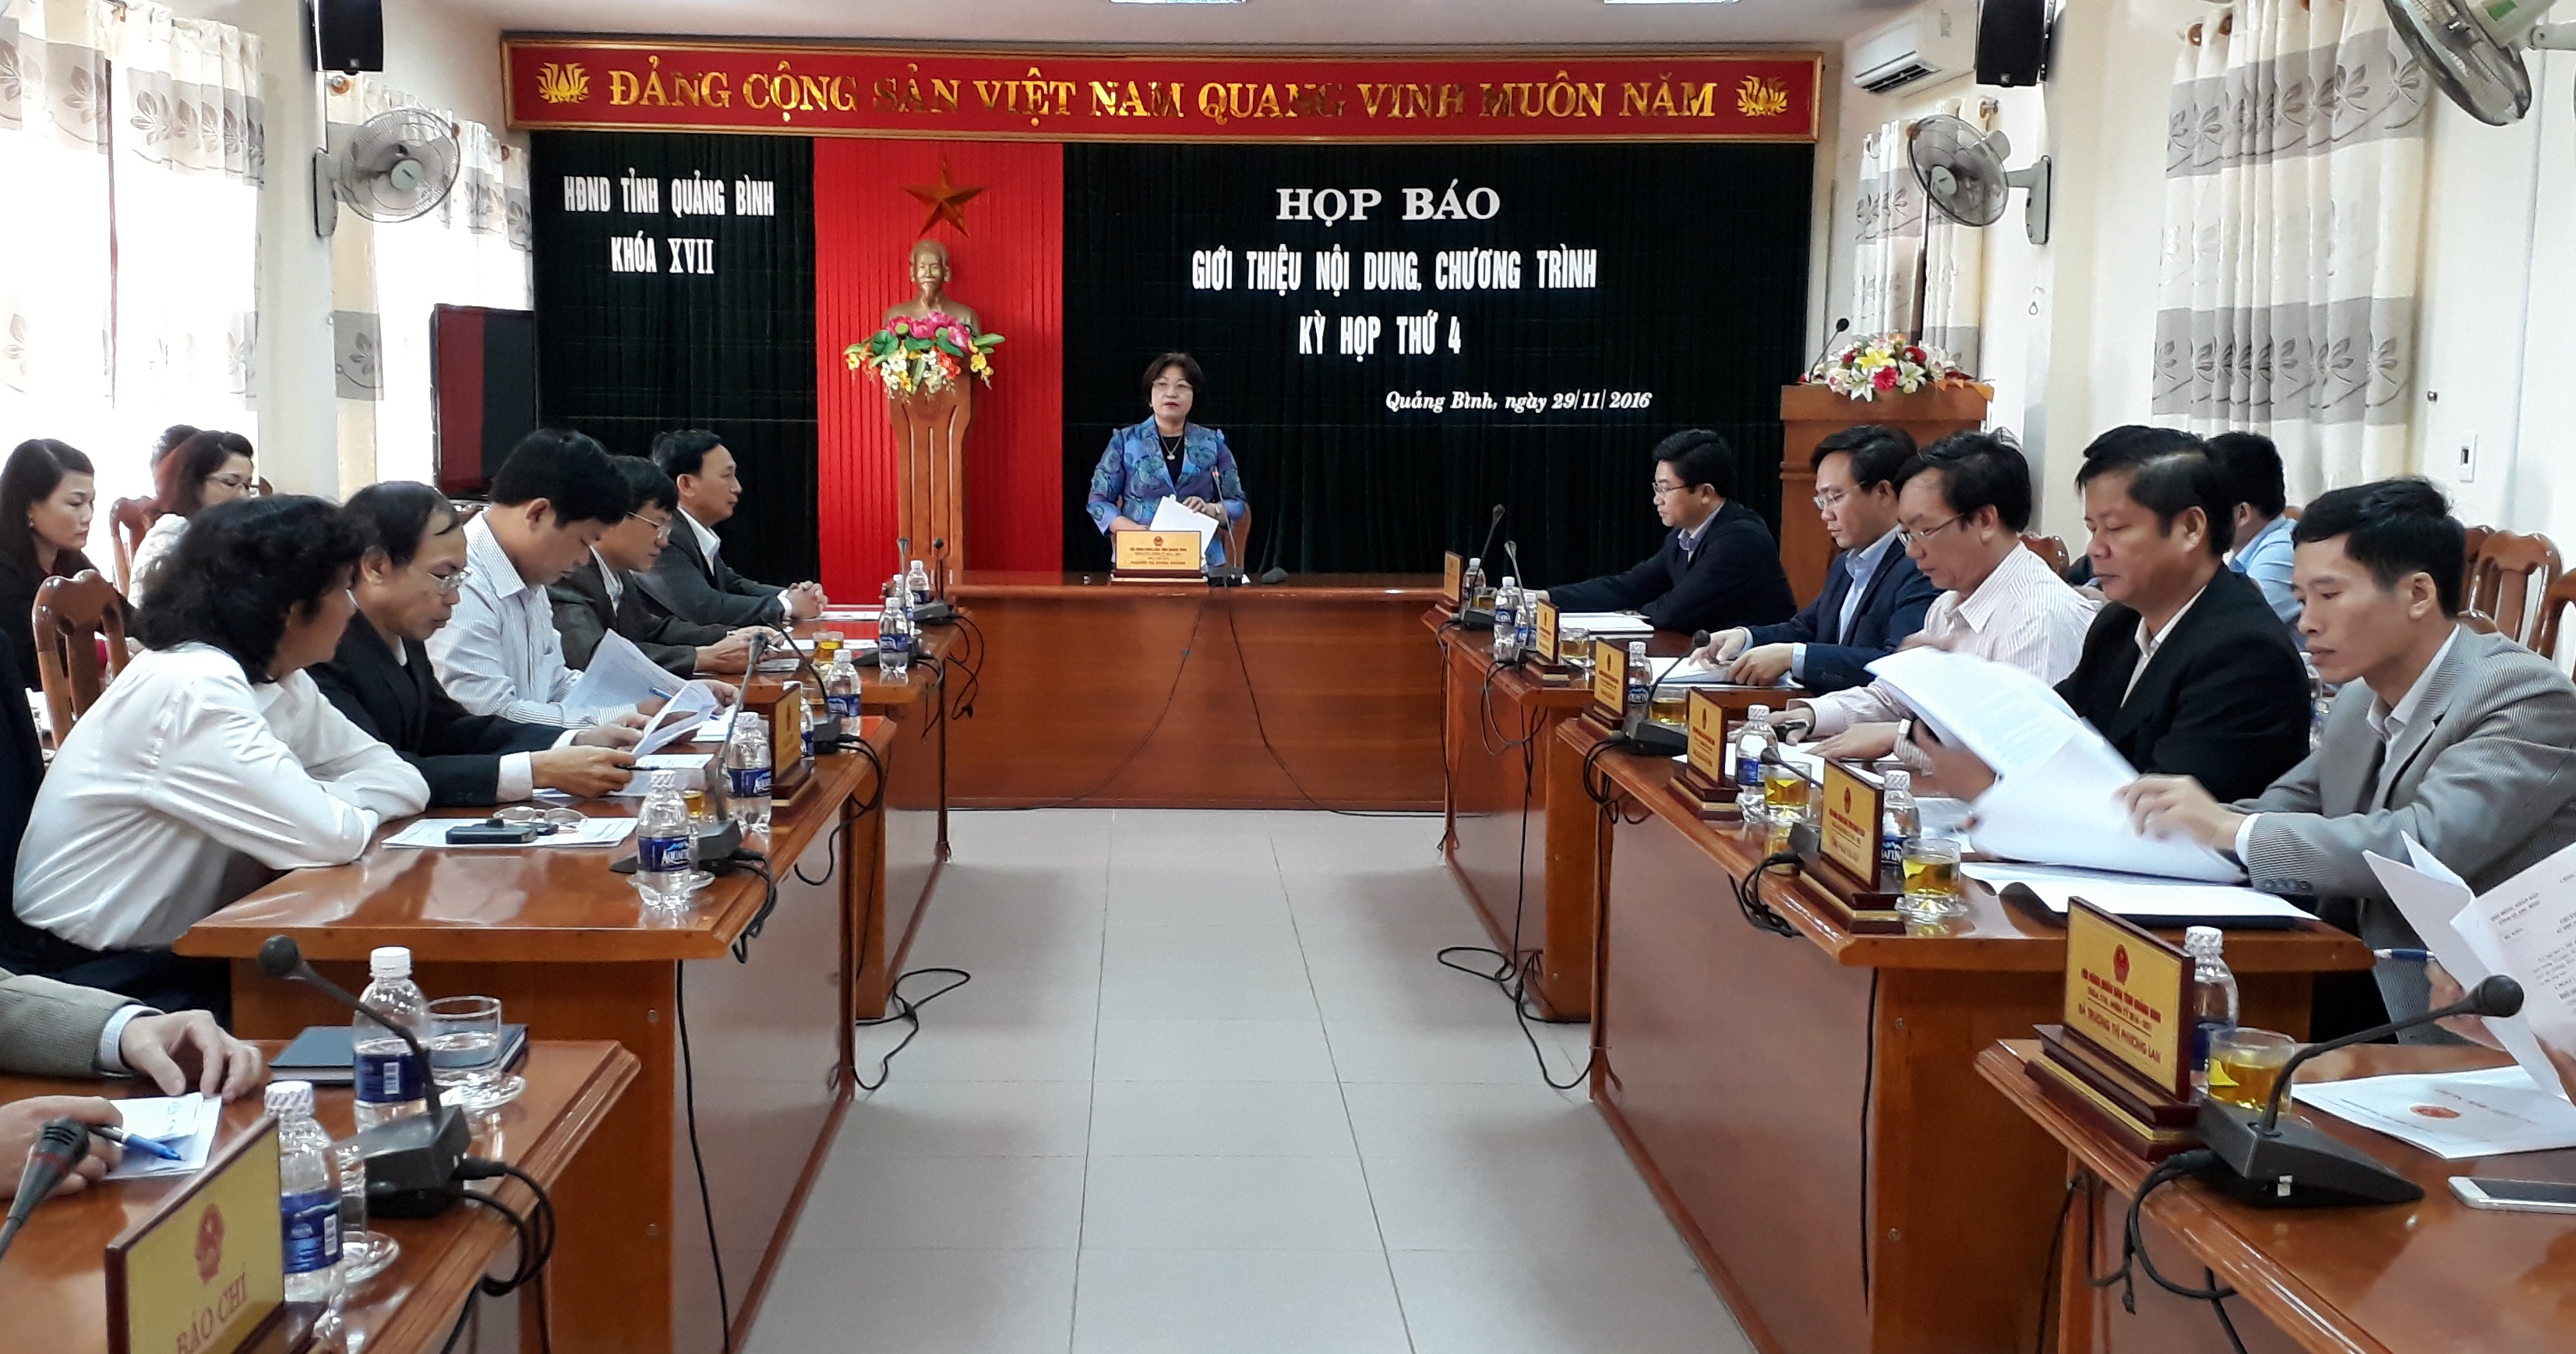 Đồng chí Nguyễn Thị Thanh Hương, Ủy viên Ban Thường vụ Tỉnh ủy, Phó Chủ tịch HĐND tỉnh phát biểu chỉ đạo kỳ họp